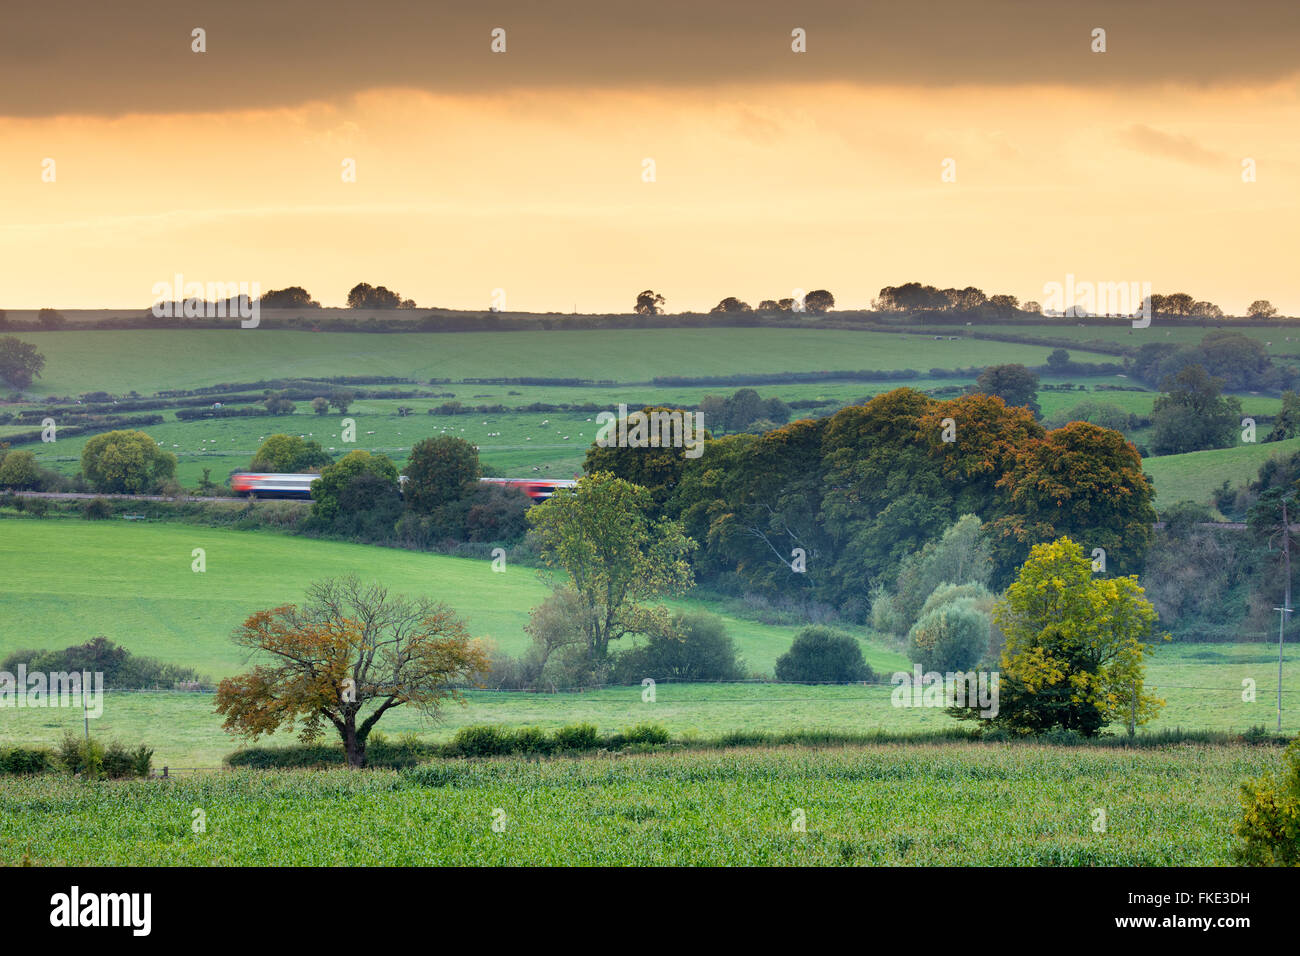 Le train passant entre les couleurs d'automne dans la vallée autour de Milborne Wick, Somerset, England, UK Banque D'Images